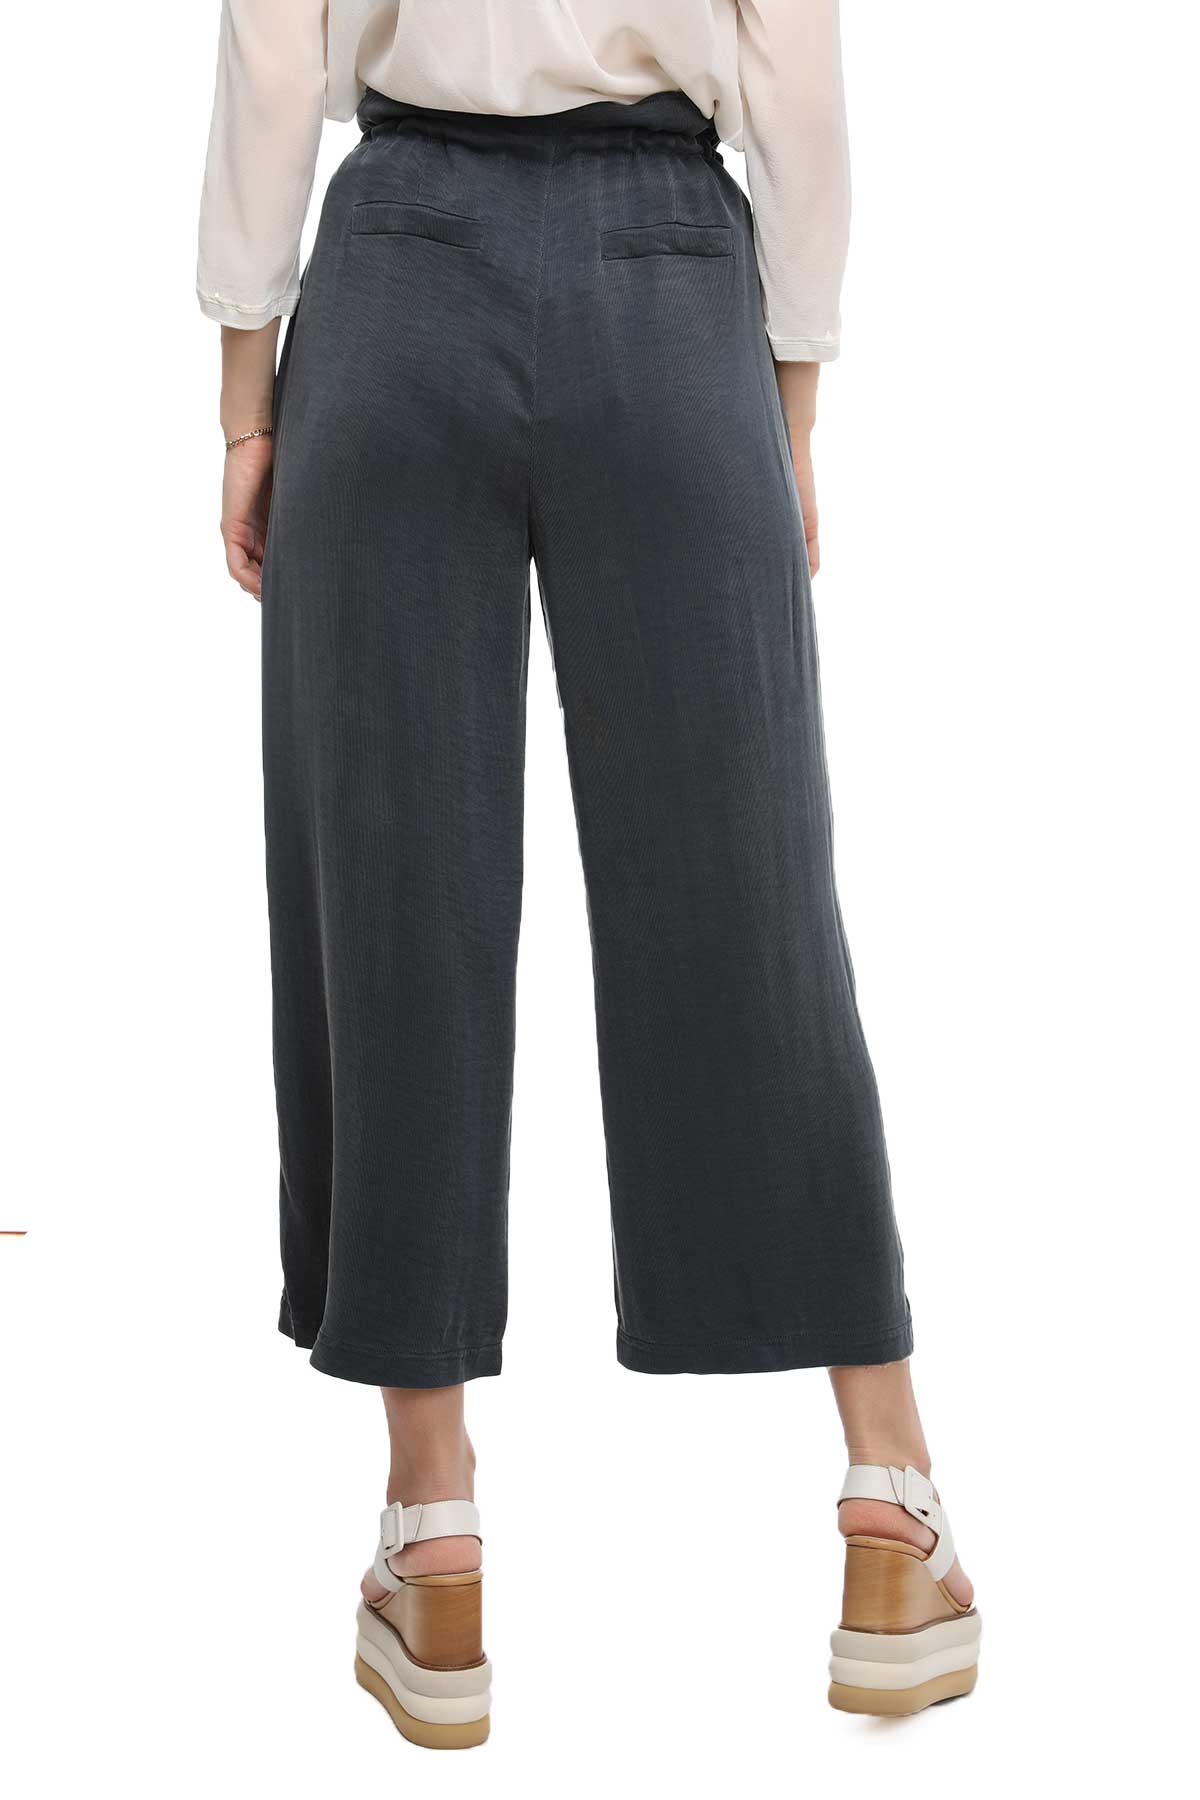 Transit Tencel™ Pantolon-Libas Trendy Fashion Store